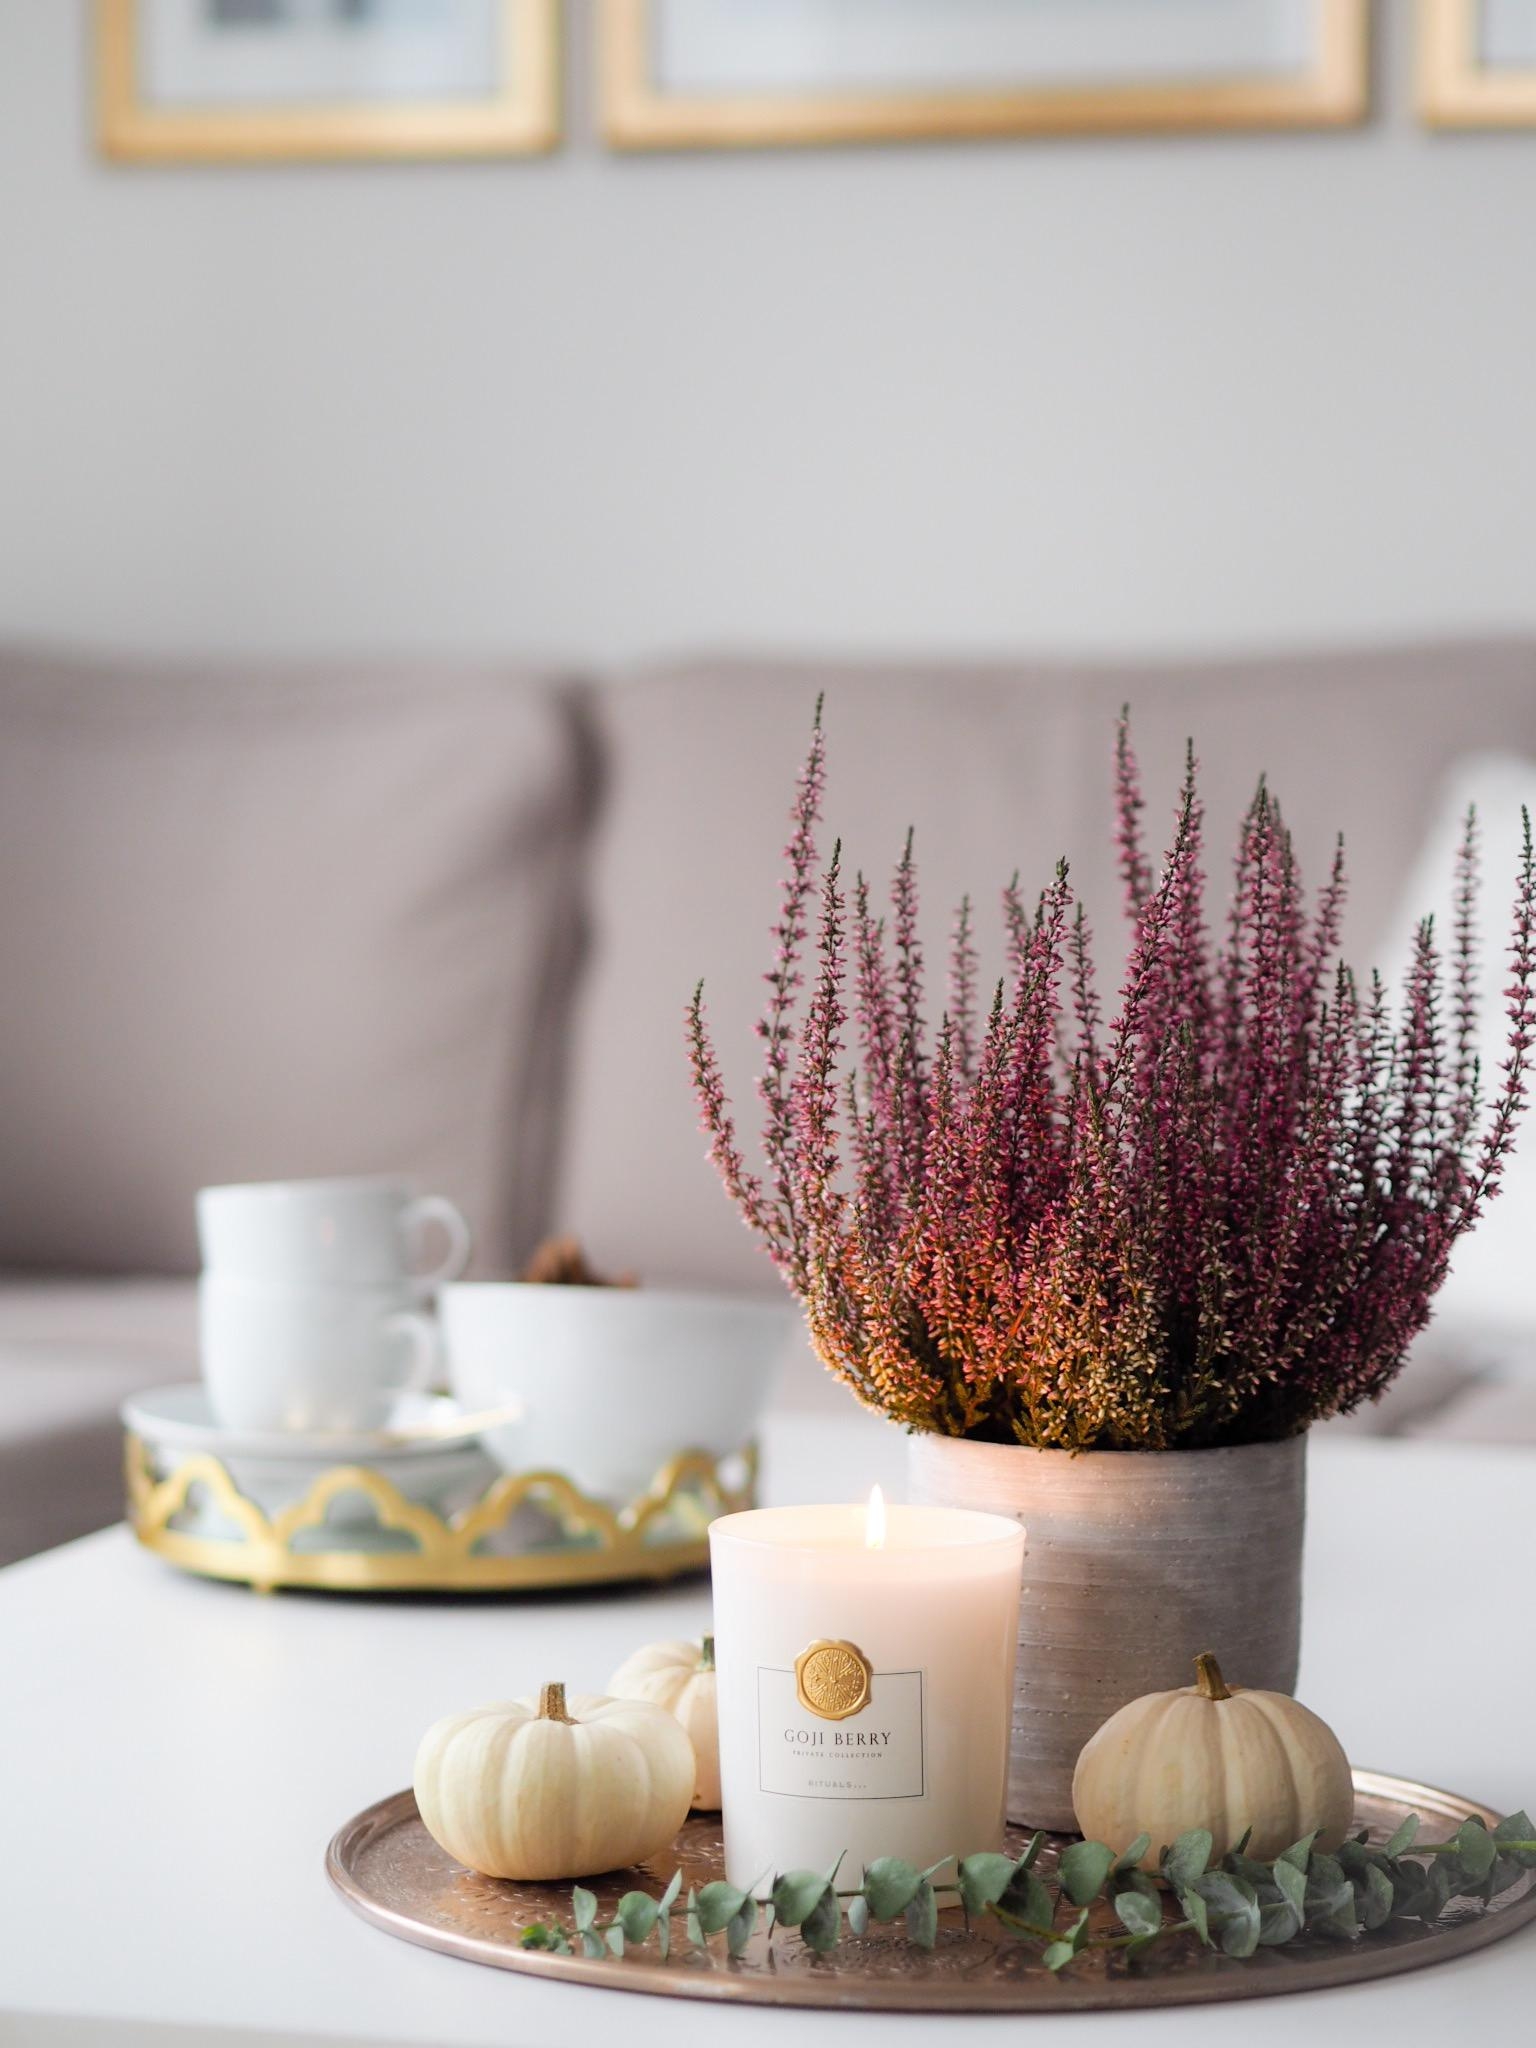 Herbst 🍂🍁
#myhome #cozy #herbstdeko #hygge #autumn #wohnzimmer #couchstyle